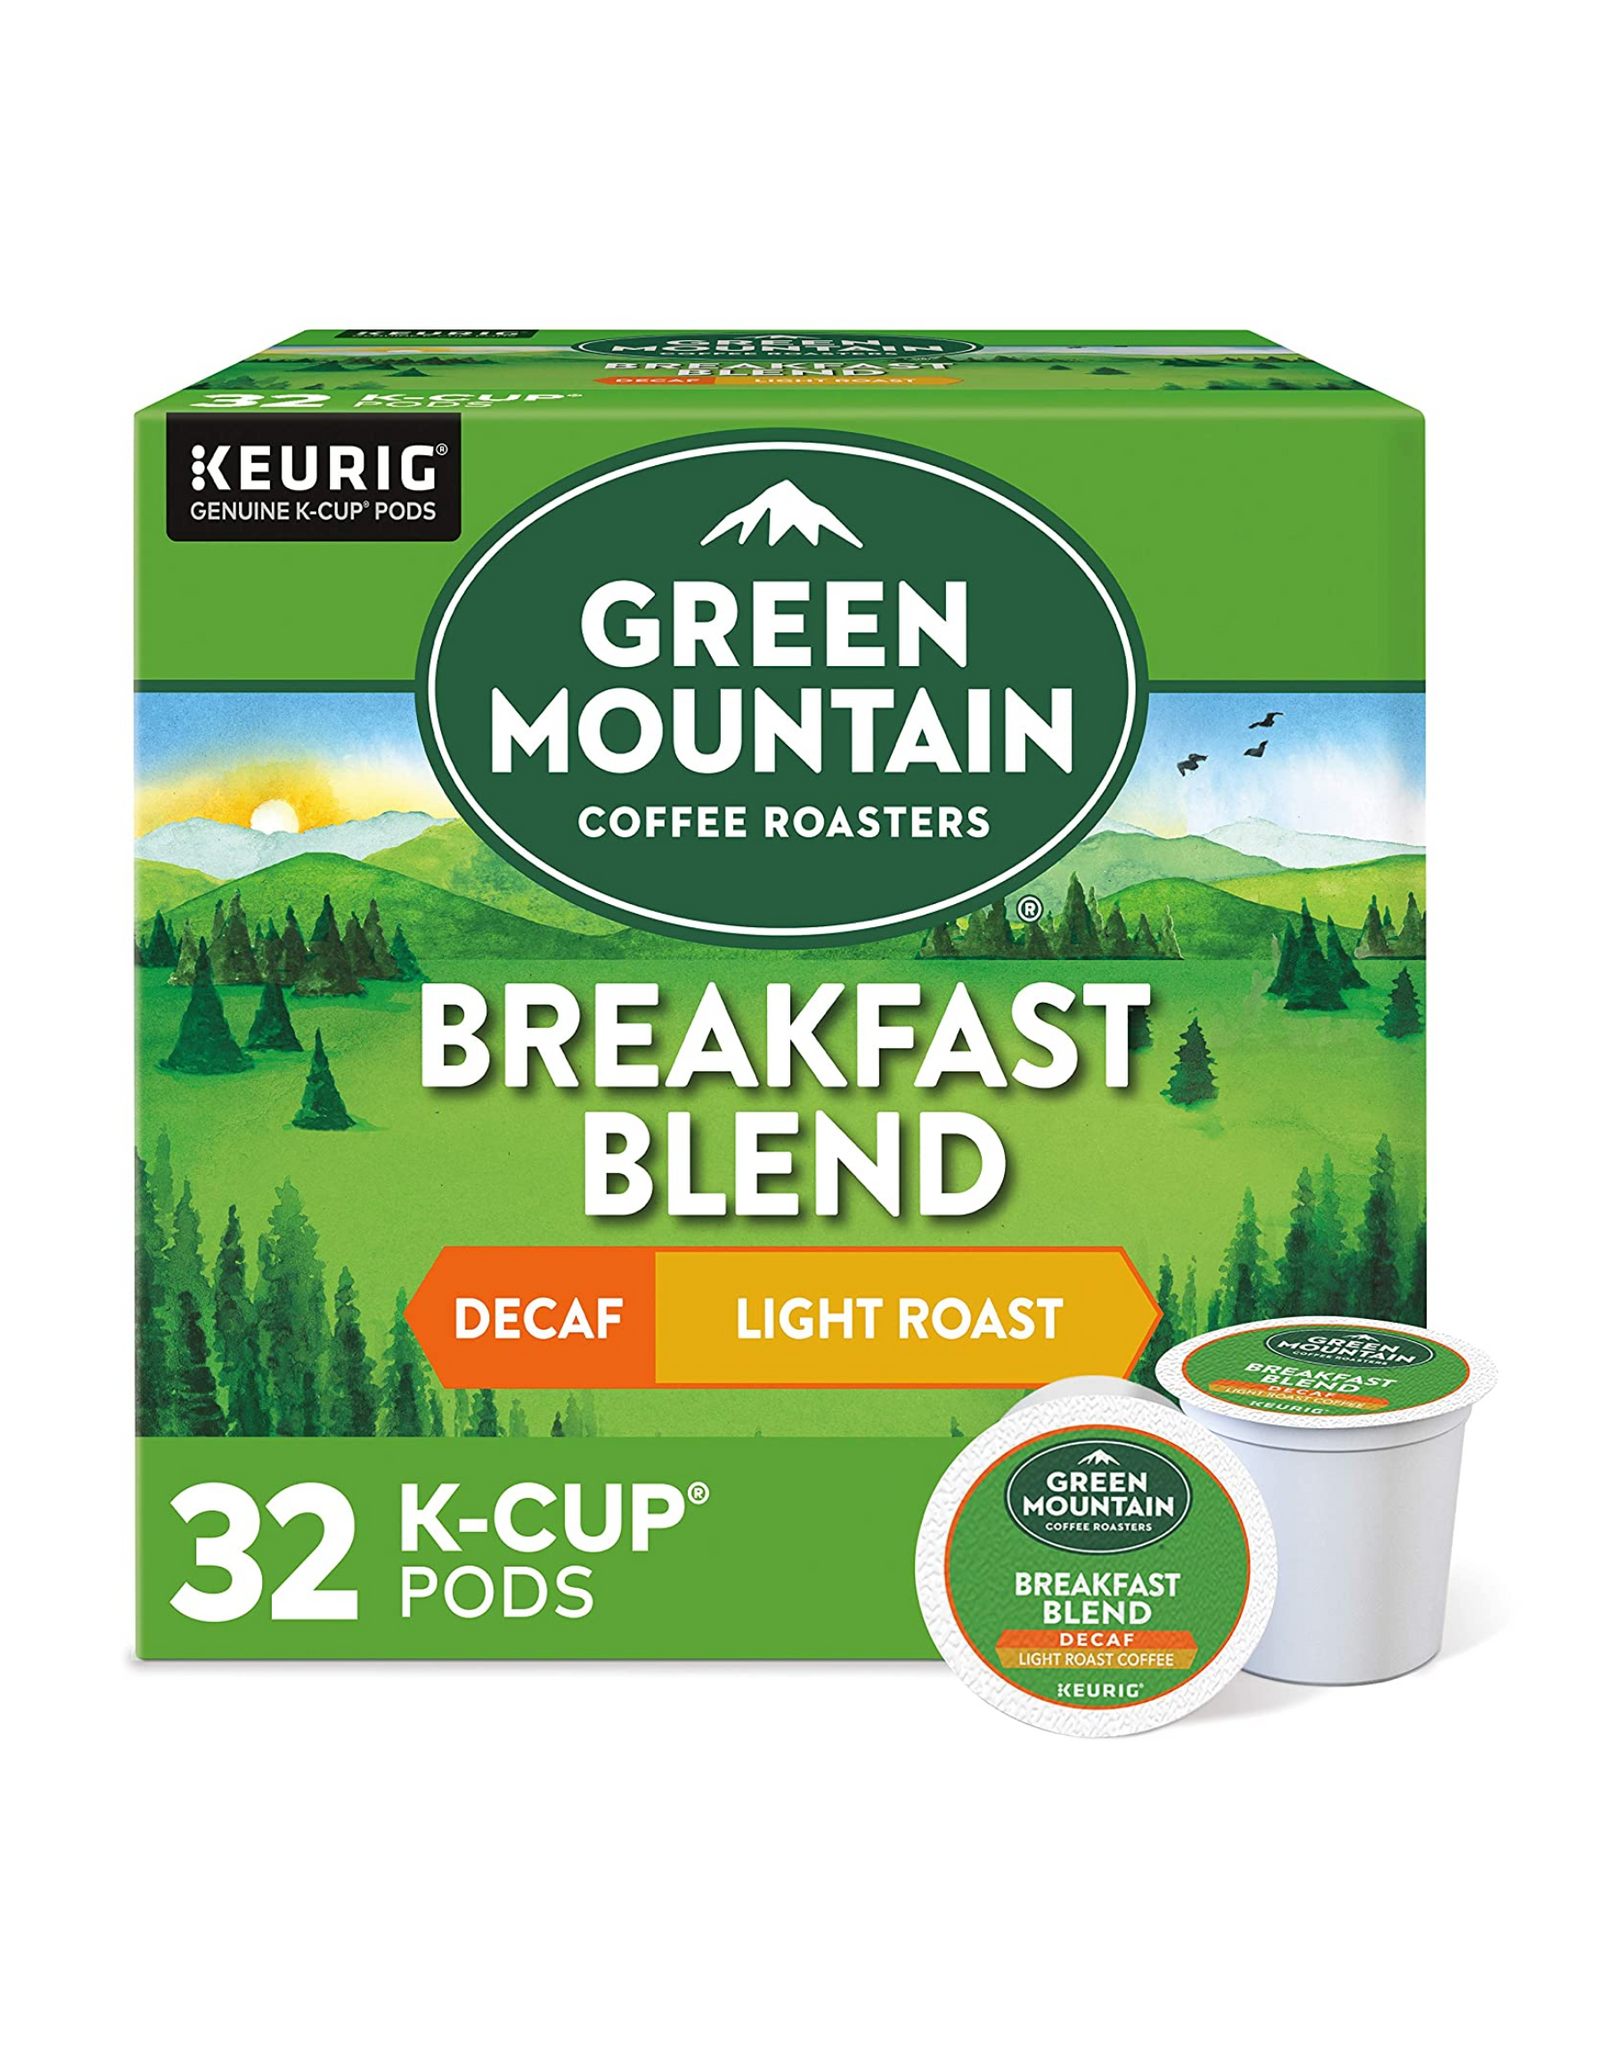 Green Mountain Coffee Roasters Breakfast Blend Keurig K-Cup Pods, Decaf Light Roast Coffee, 32 Ct (Pack of 1)